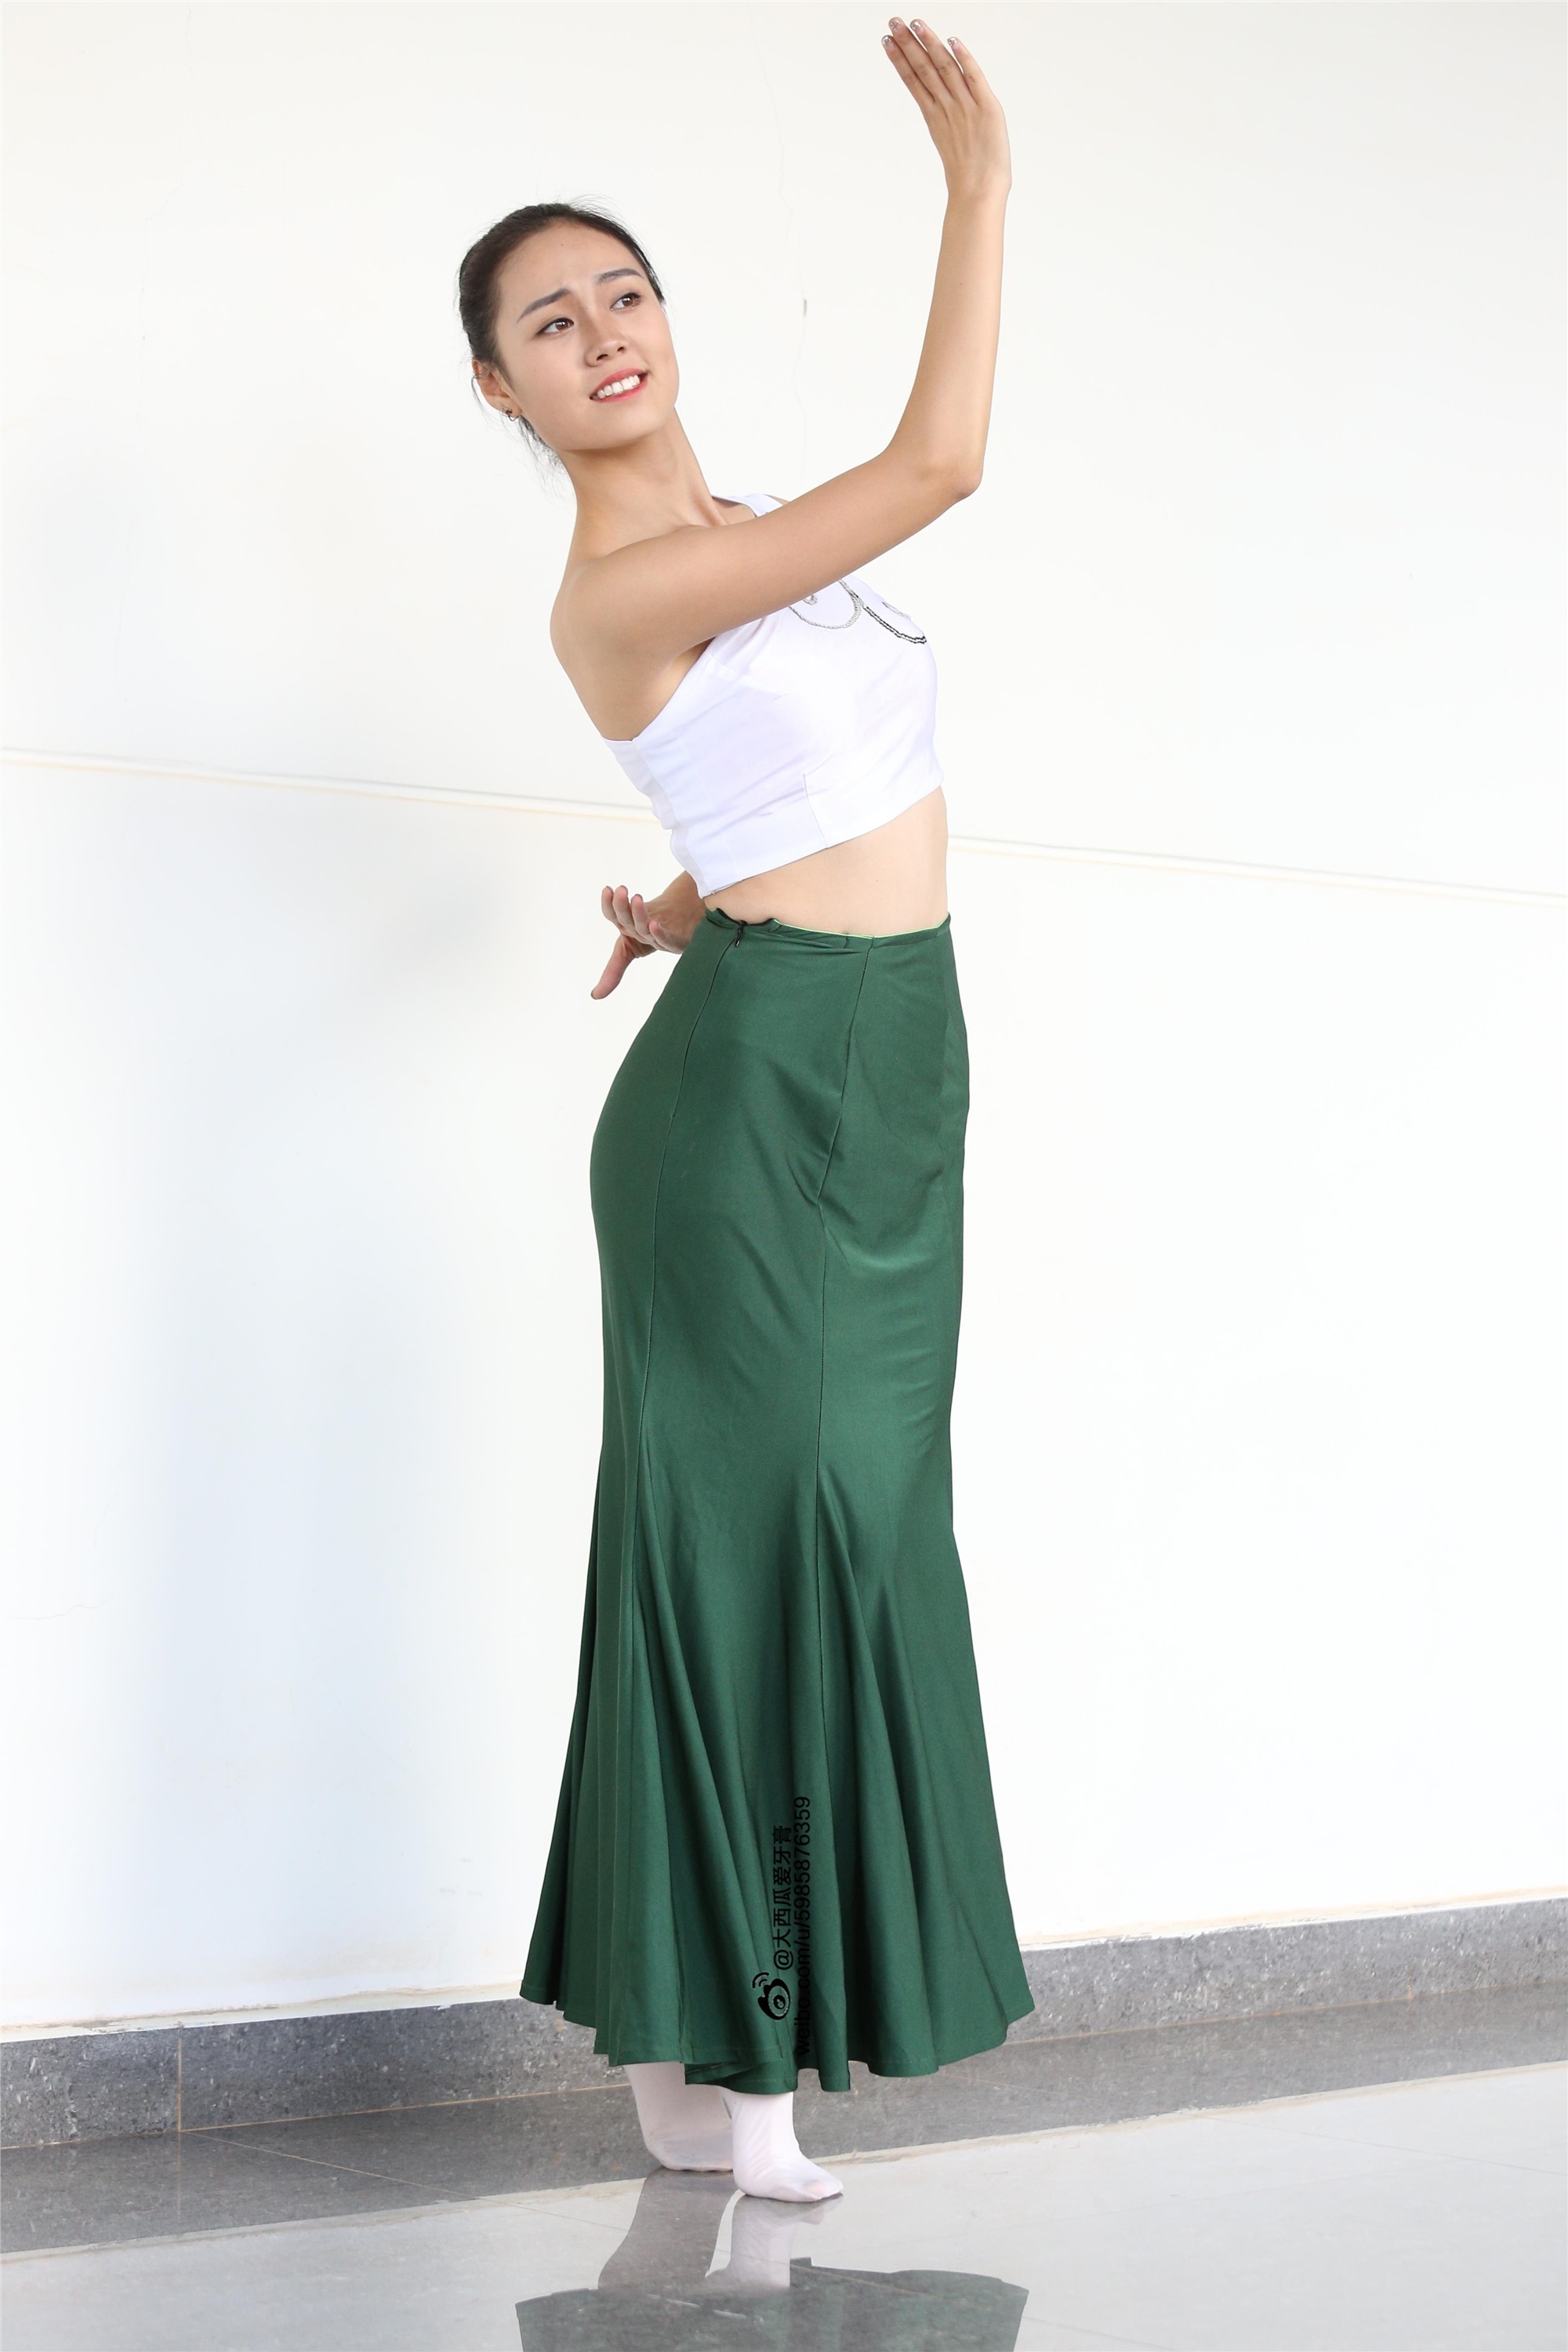 W006 dancer 1 - Wenjun green skirt 2